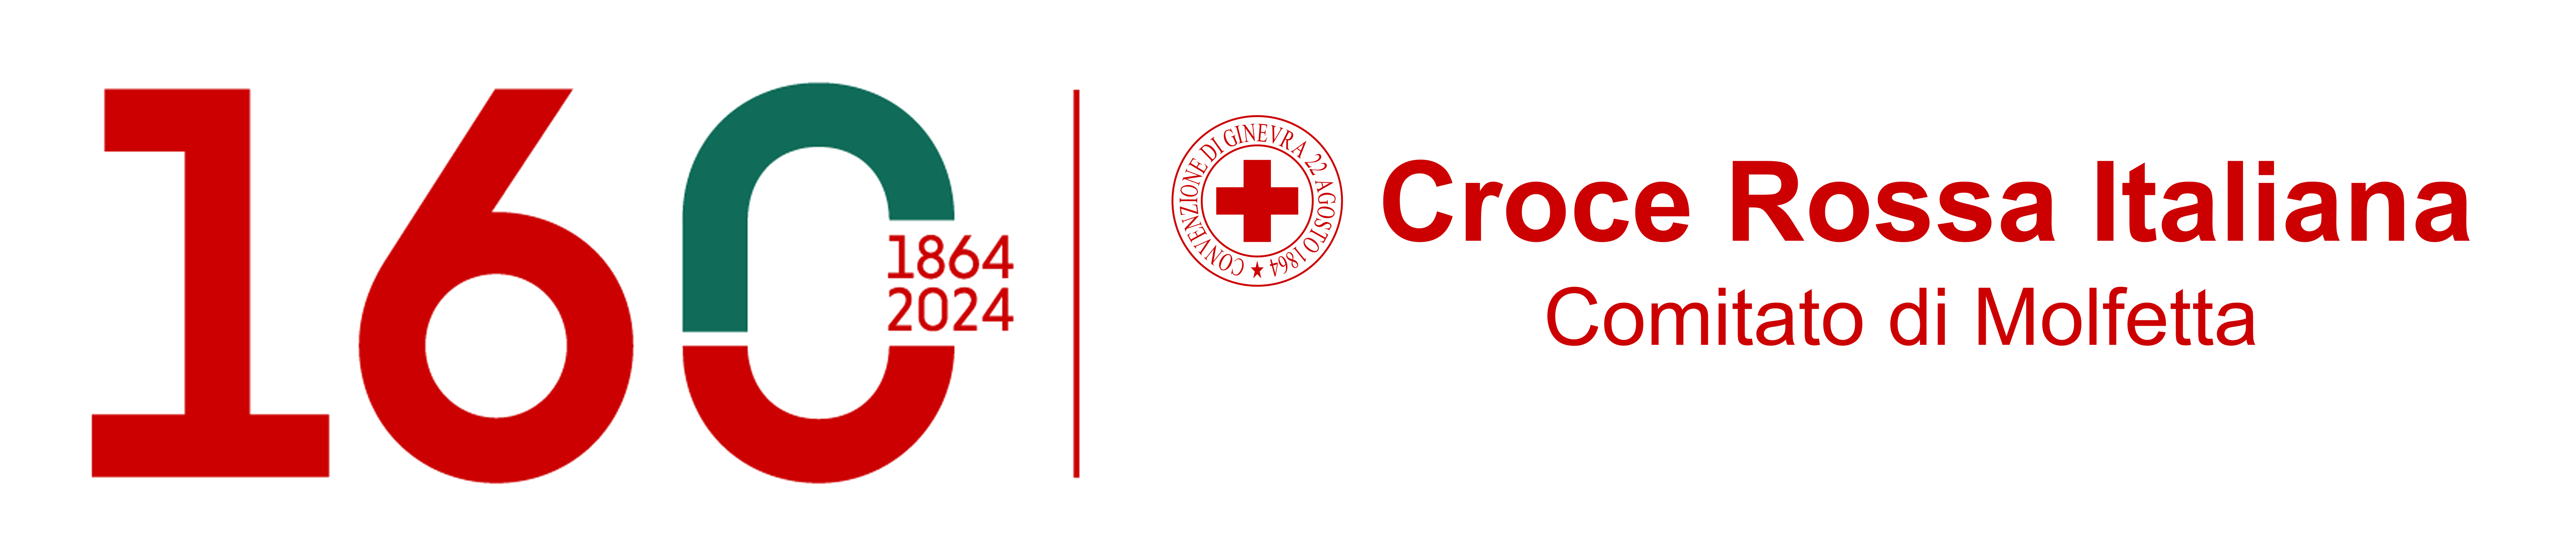 Croce Rossa Italiana – Comitato di Molfetta